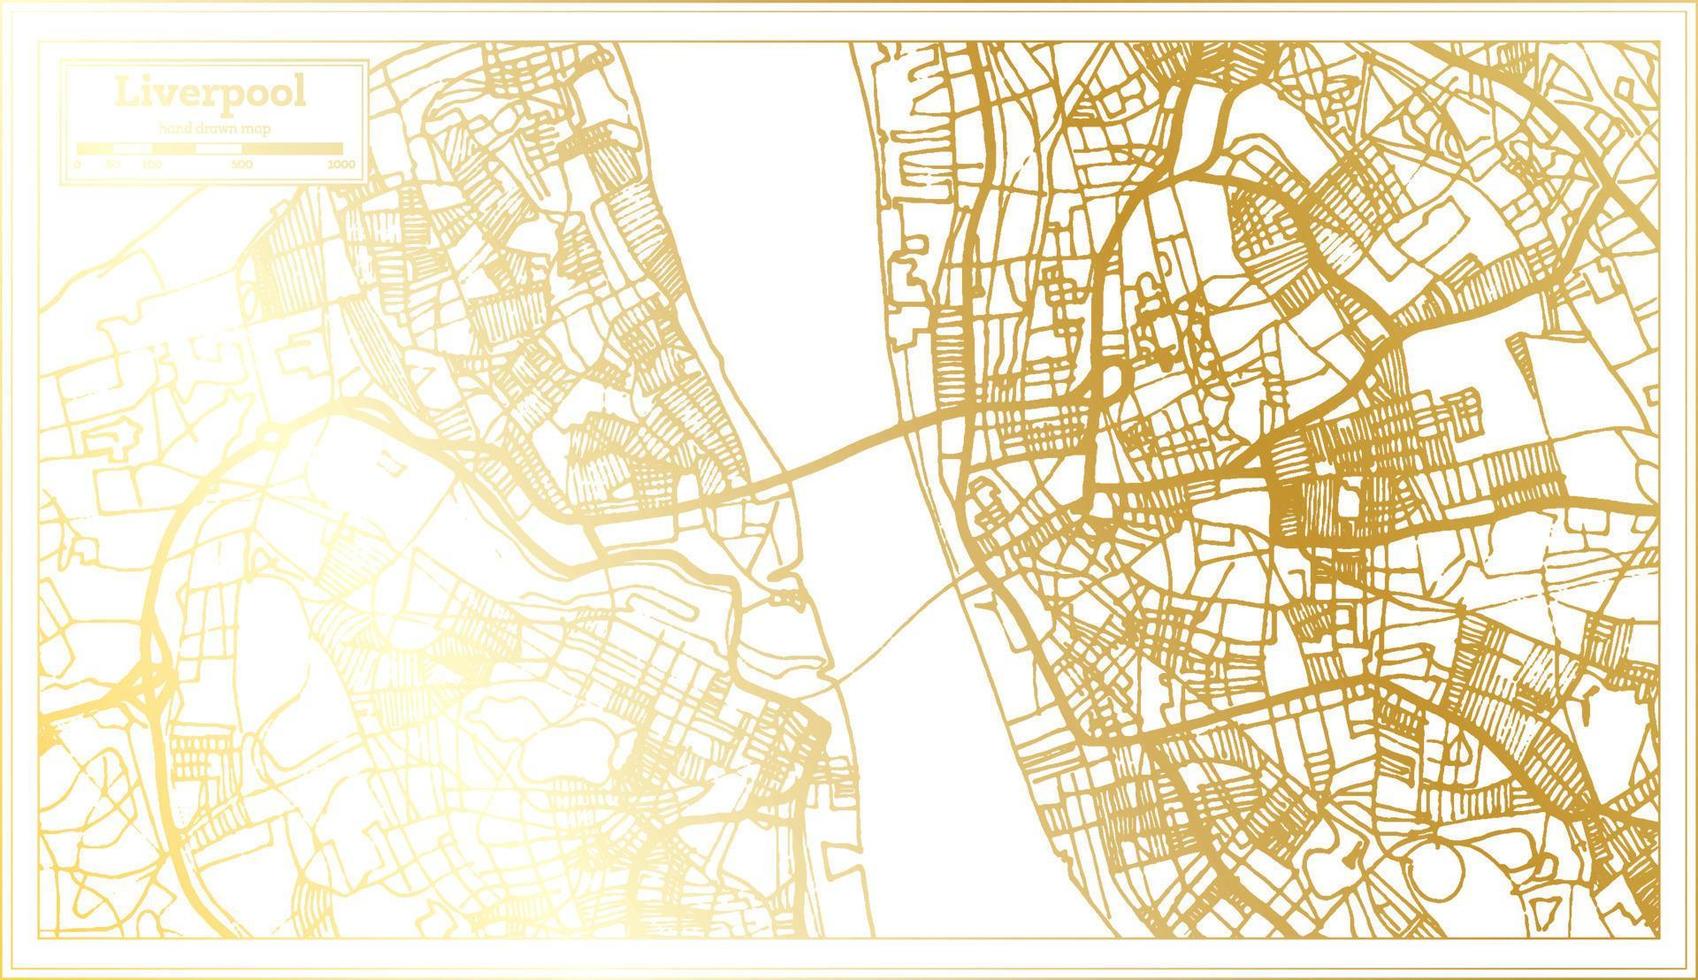 plan de la ville de liverpool angleterre dans un style rétro de couleur dorée. carte muette. vecteur